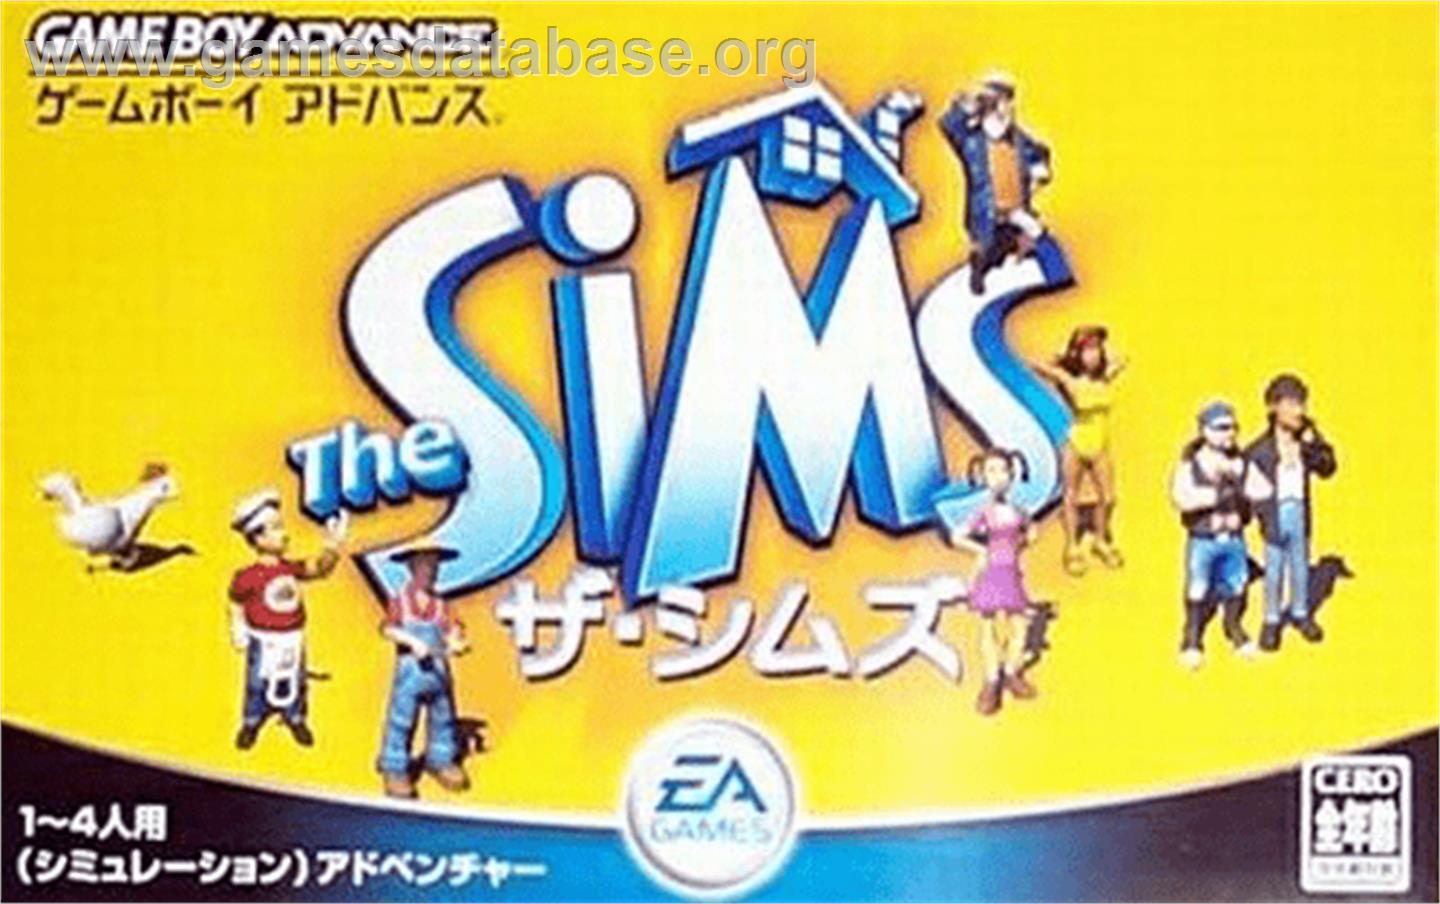 Sims - Nintendo Game Boy Advance - Artwork - Box